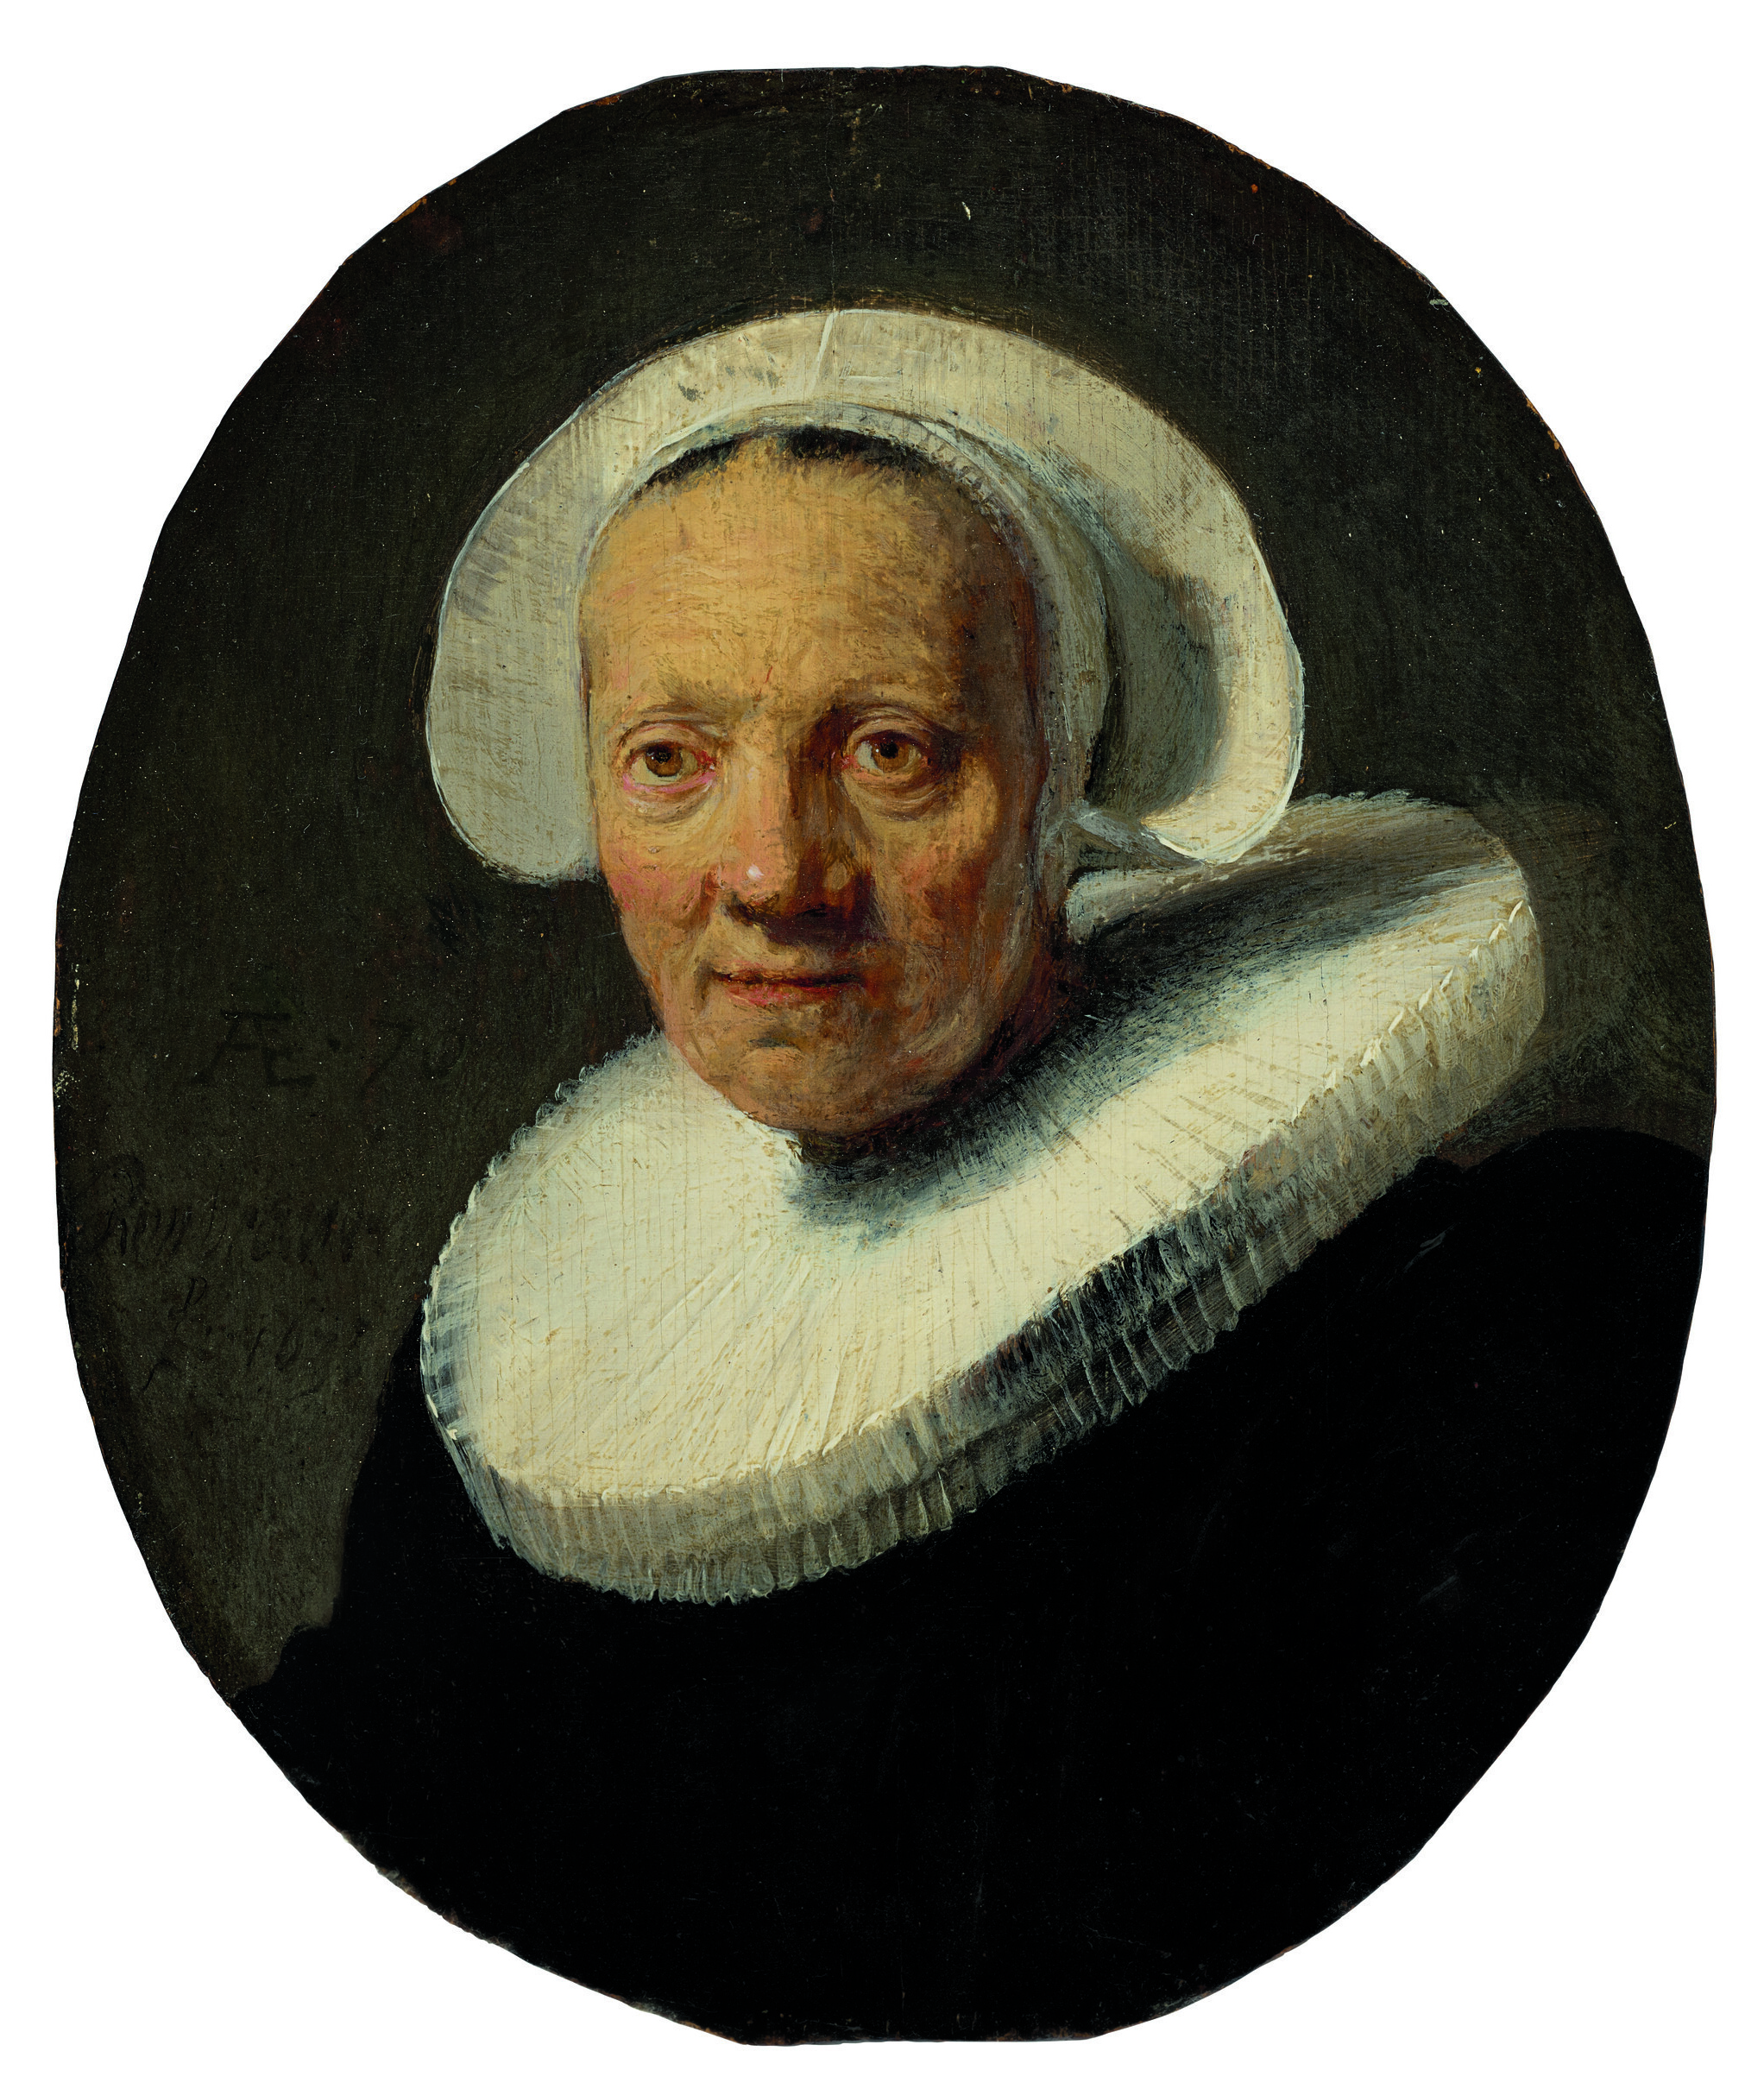 Dos retratos inéditos de Rembrandt